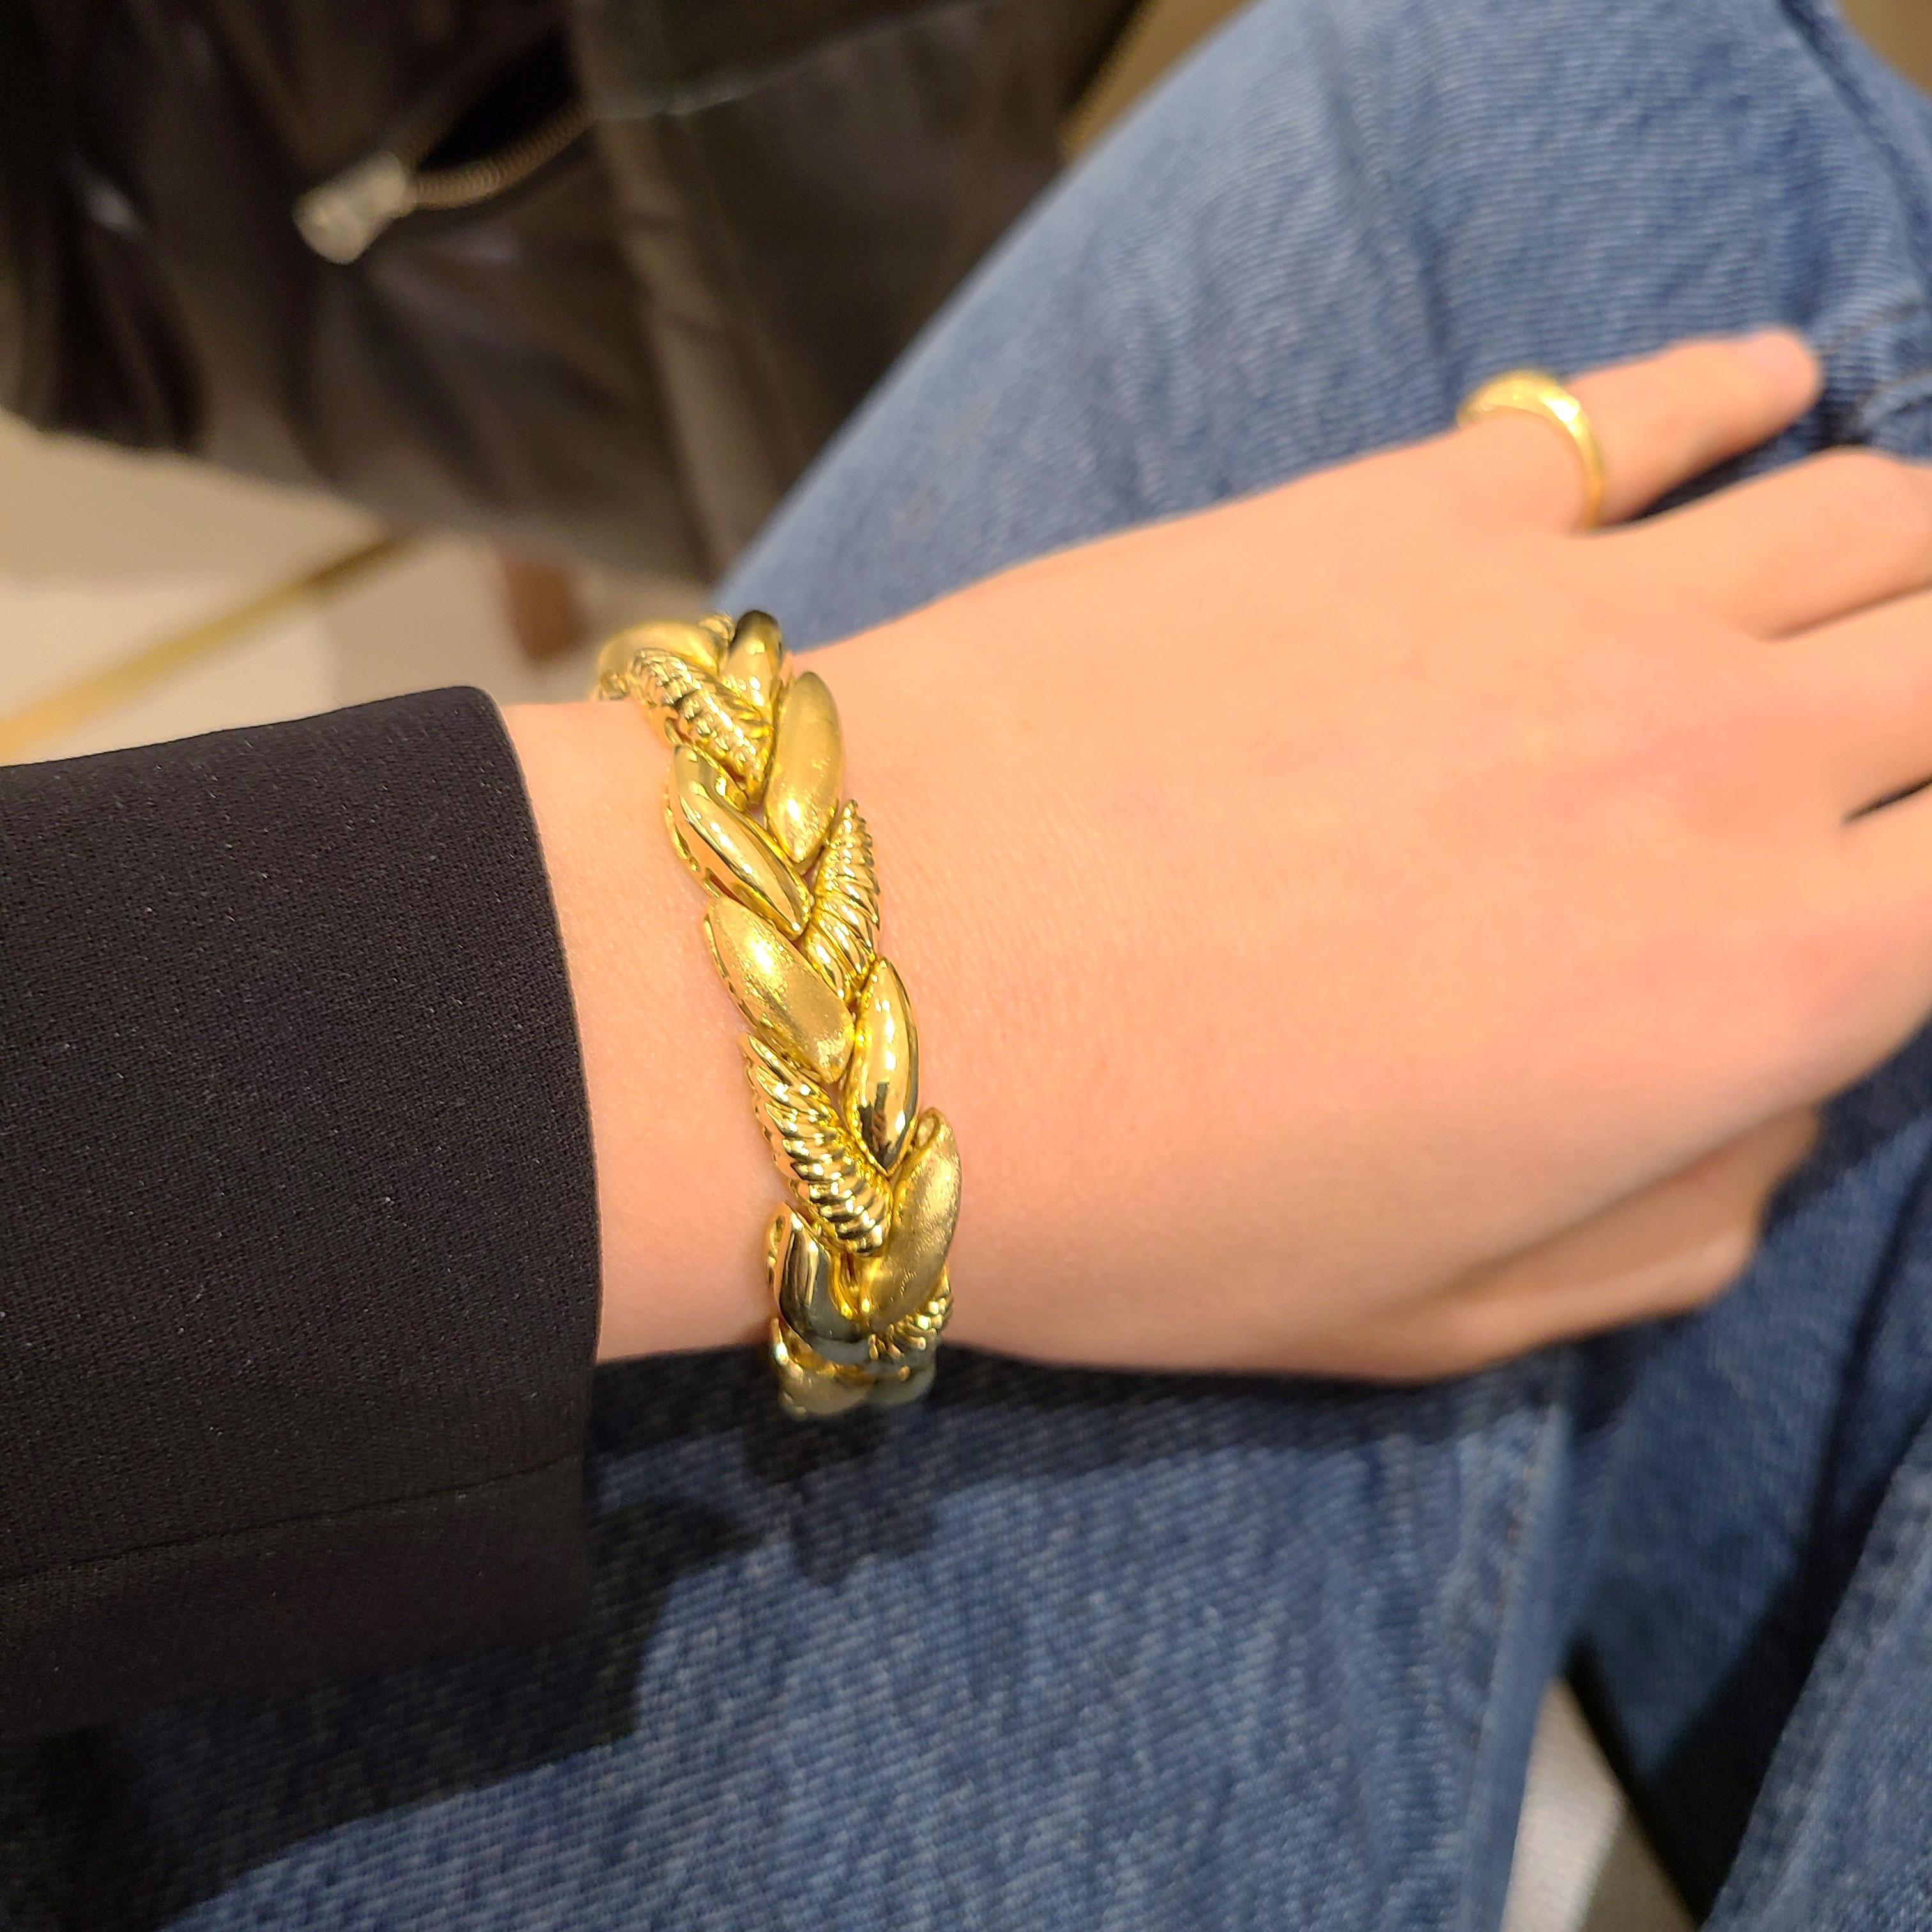 Magnifique bracelet en or jaune 18kt conçu par Roberto Coin d'Italie. Le bracelet est conçu comme une tresse avec 3 finitions différentes, brillante, mate et nervurée. Le contraste fonctionne de manière exquise dans ce modèle classique et intemporel